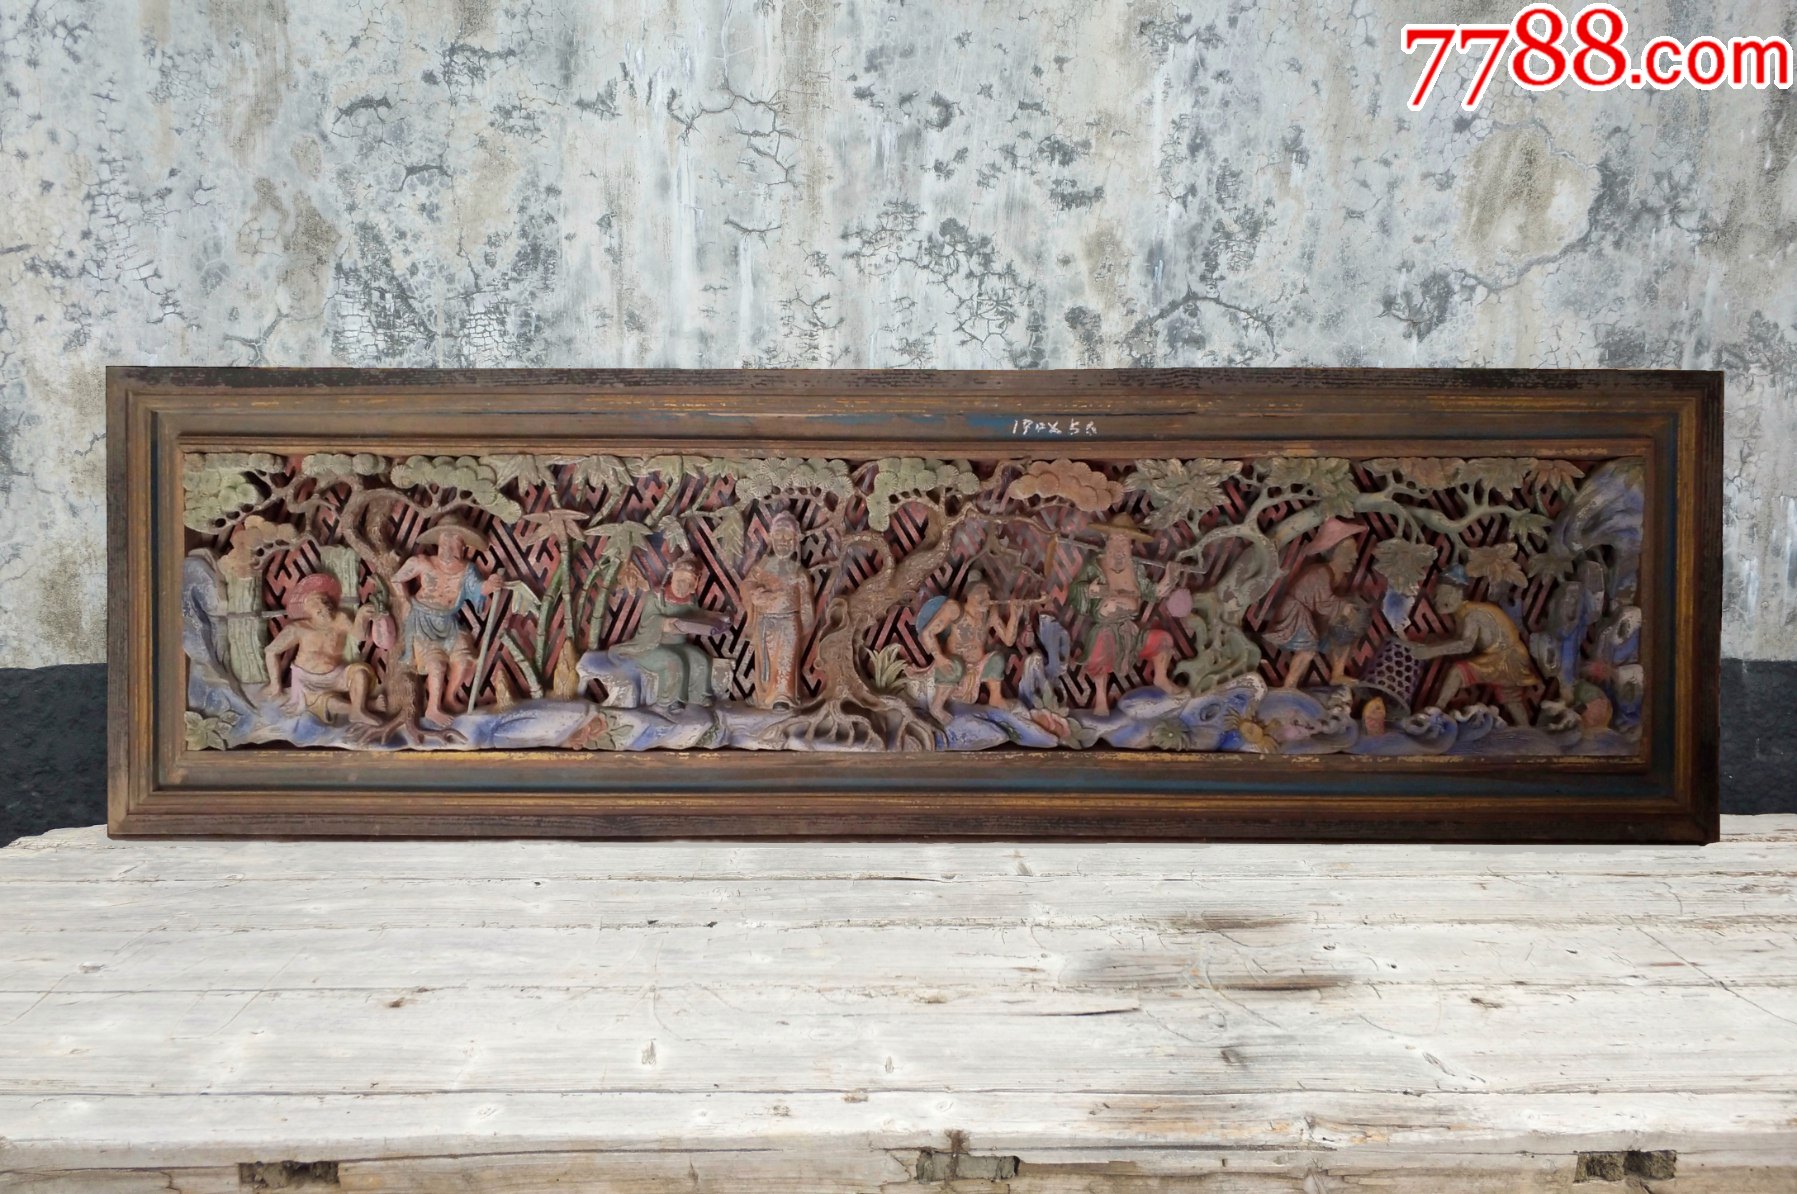 渔樵耕读大型花板老木雕8个人物搭配山川河流古建筑装修装饰藏品